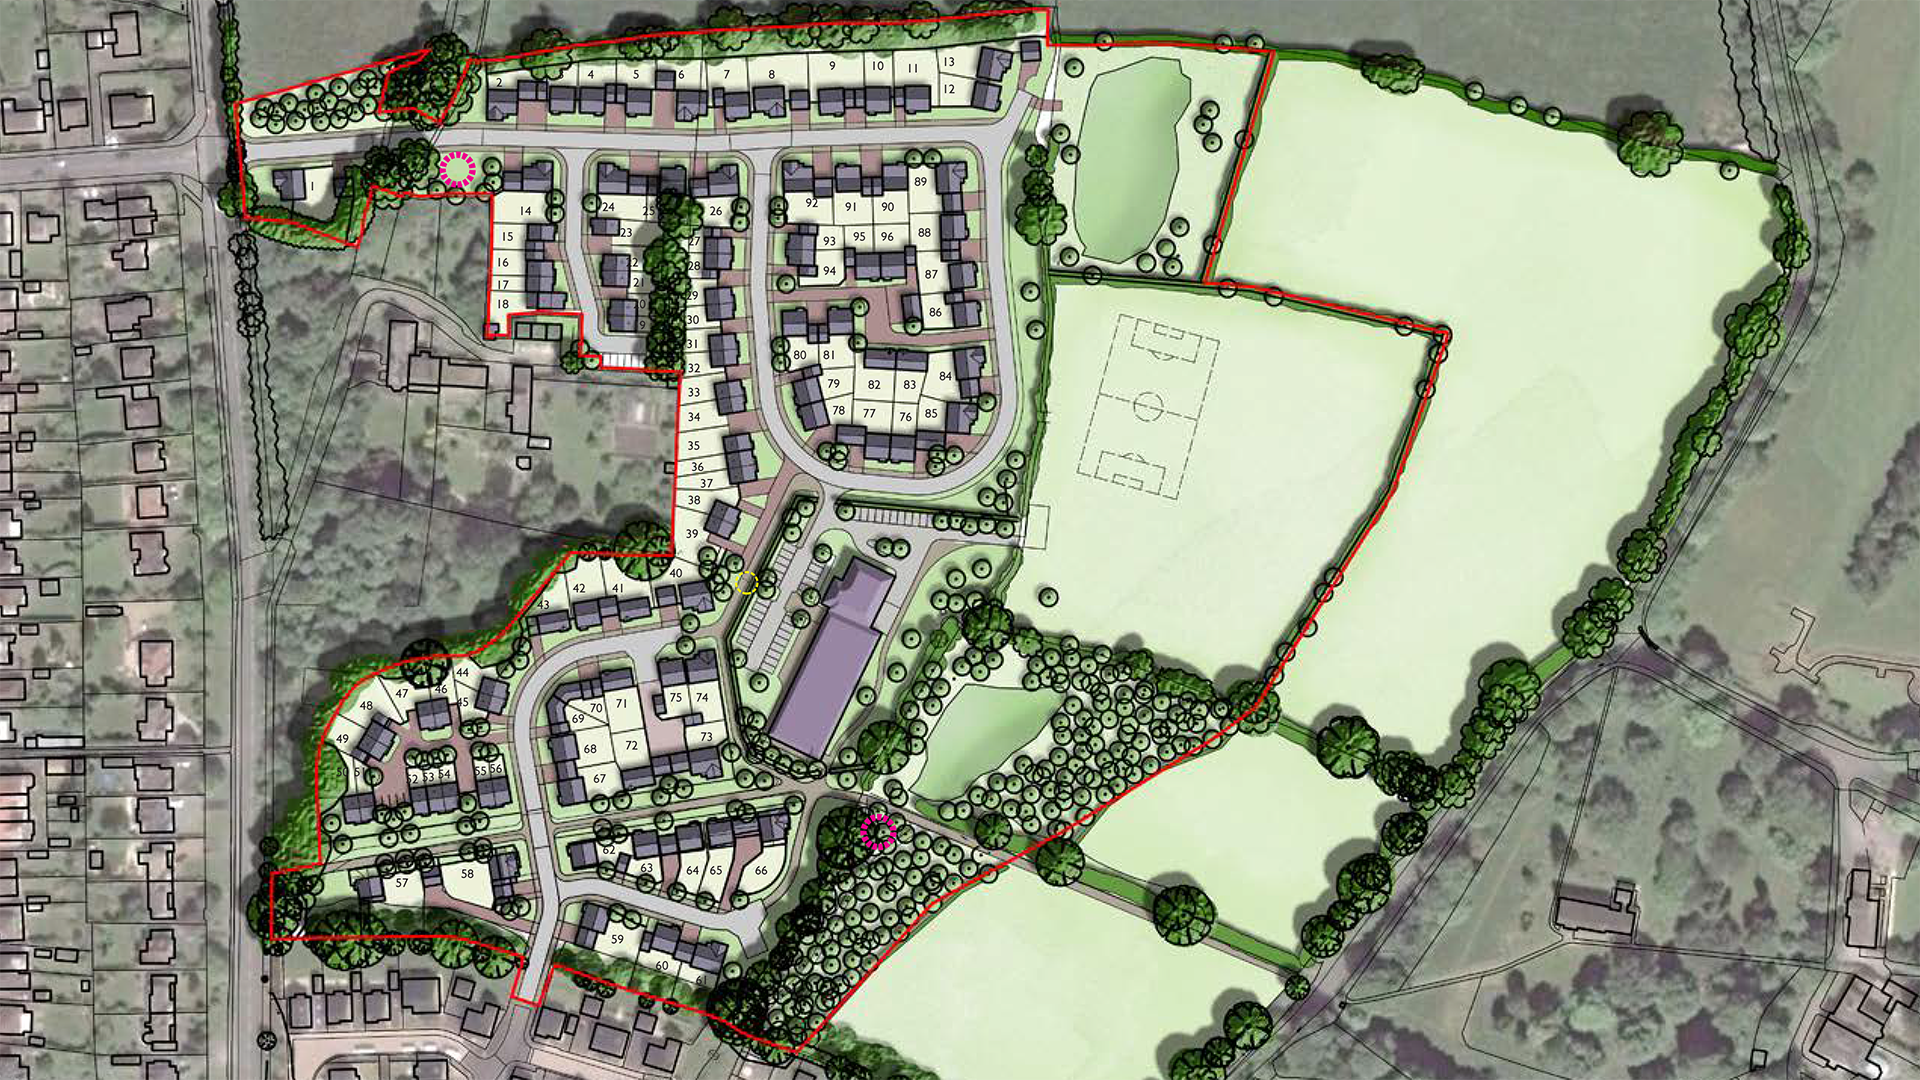 Adel, Leeds promoting land through planning. Masterplan diagram.